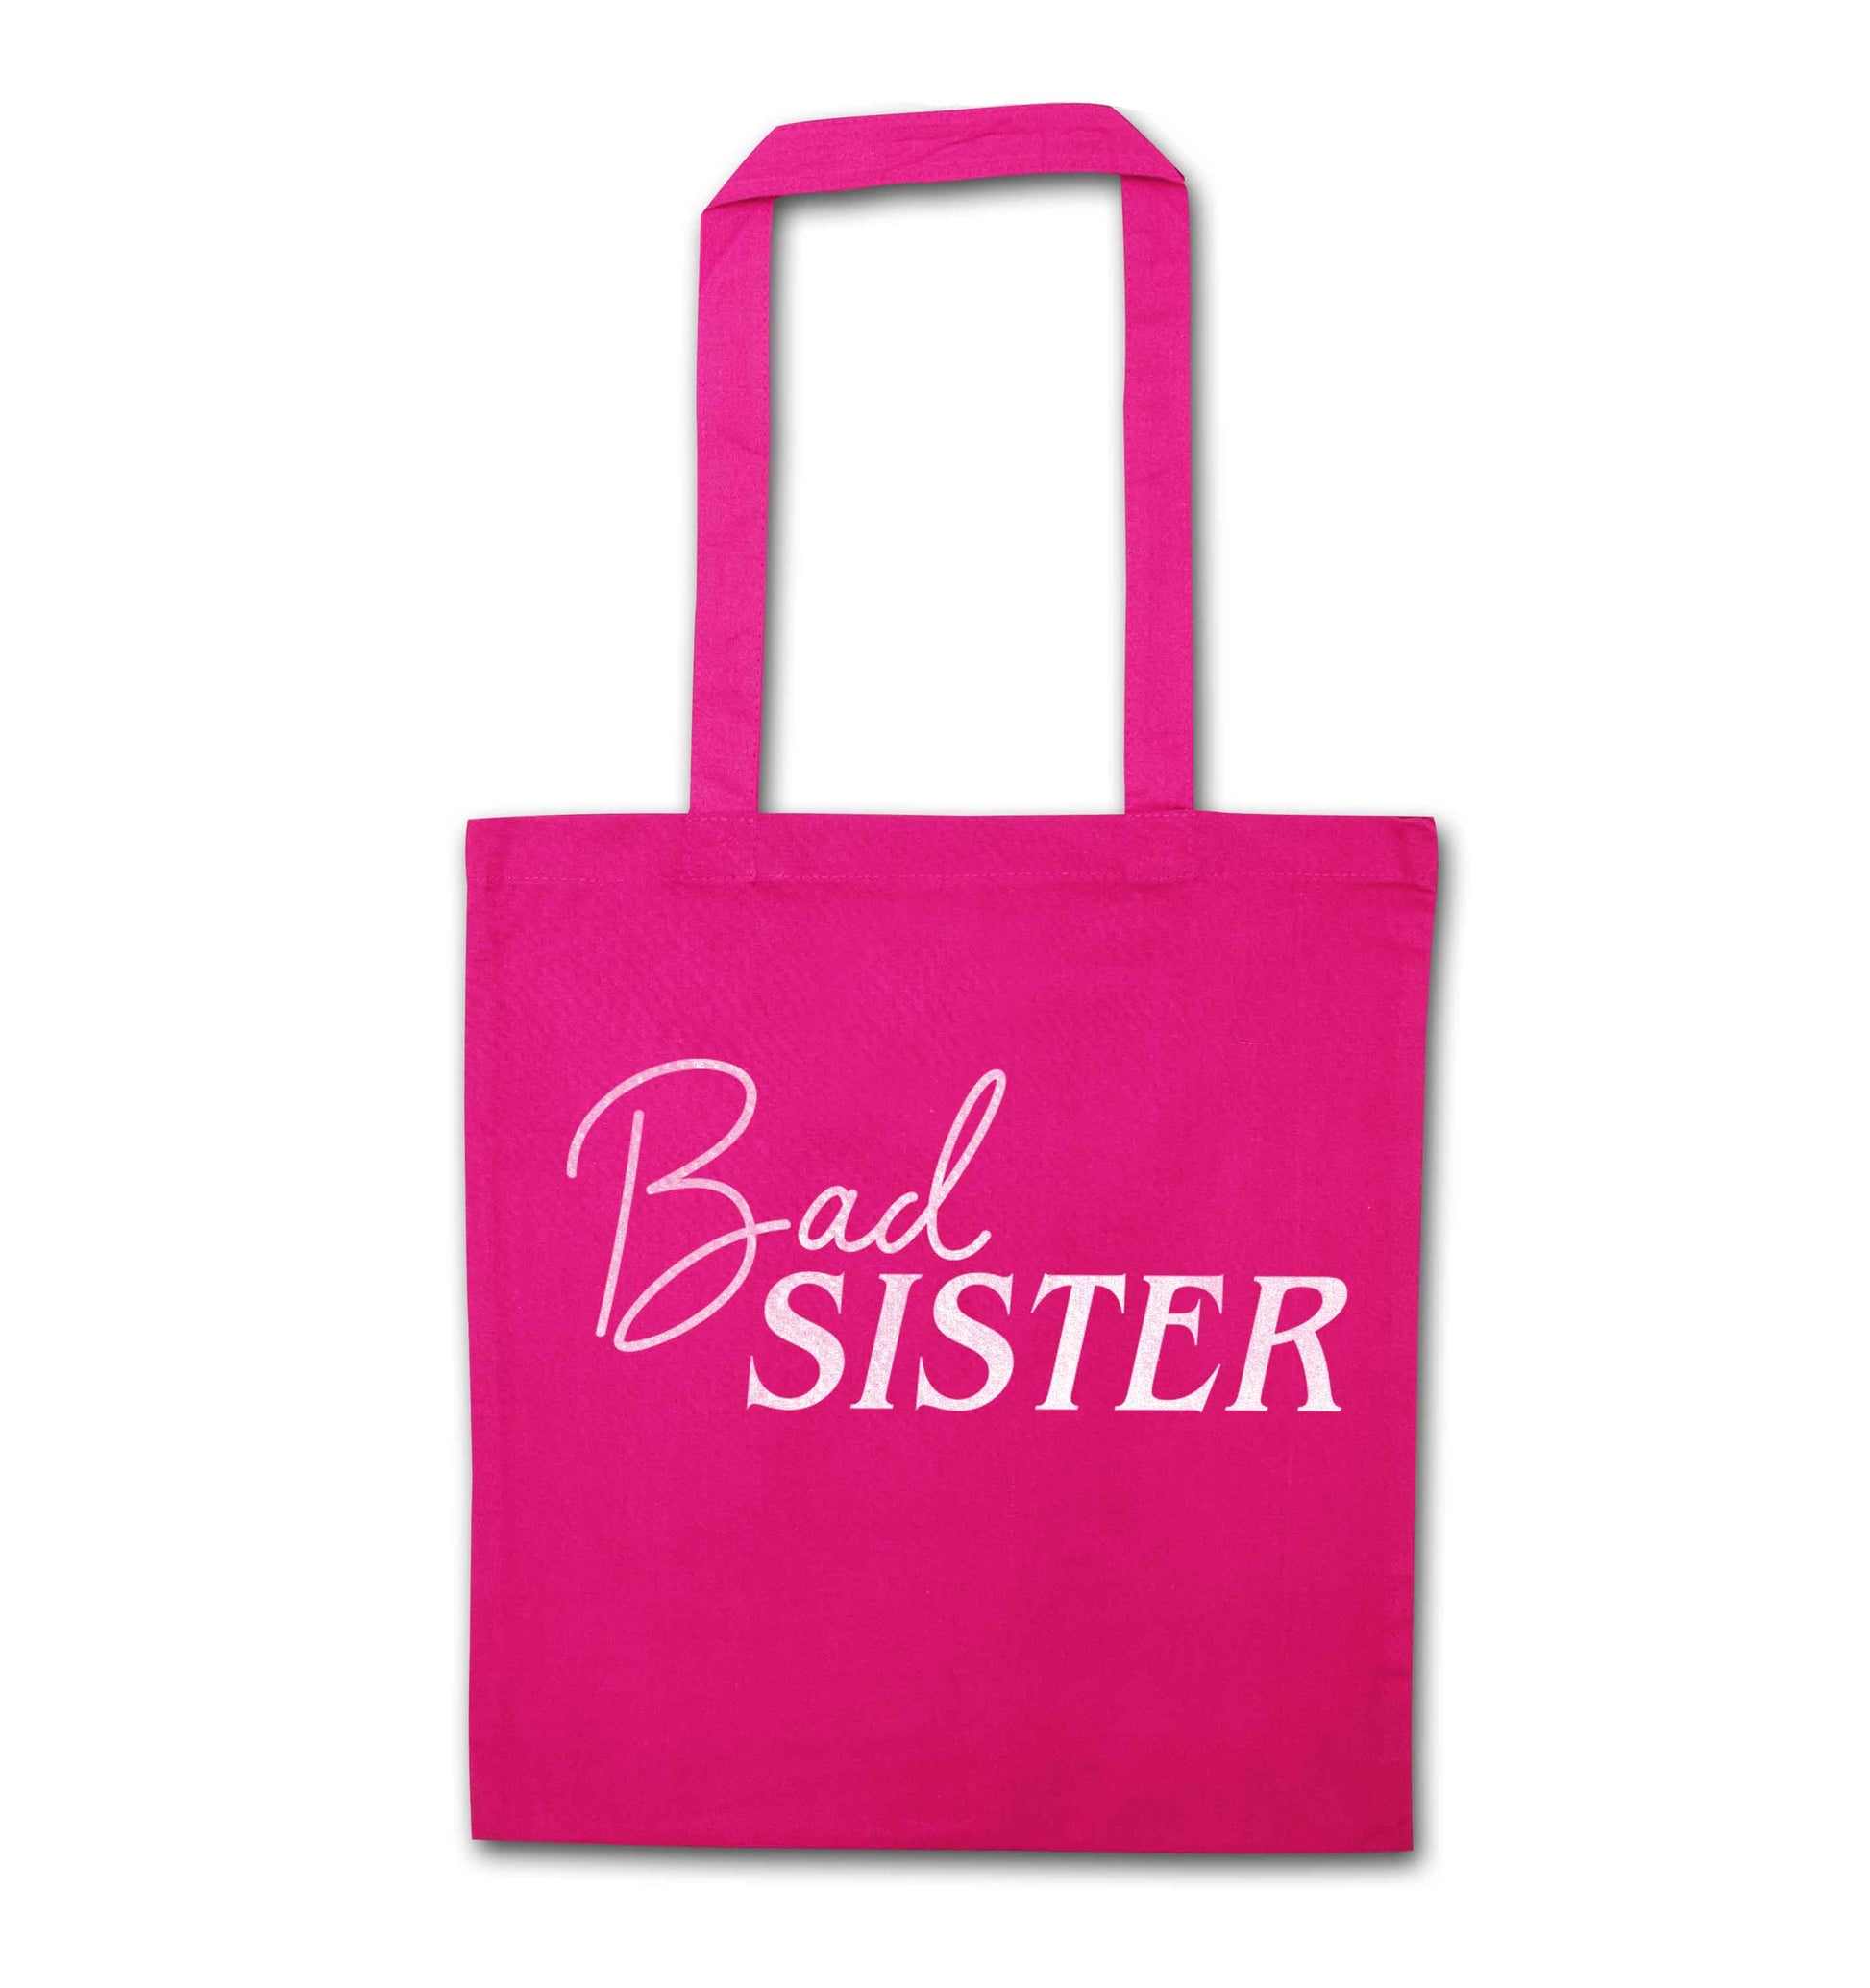 Bad sister pink tote bag